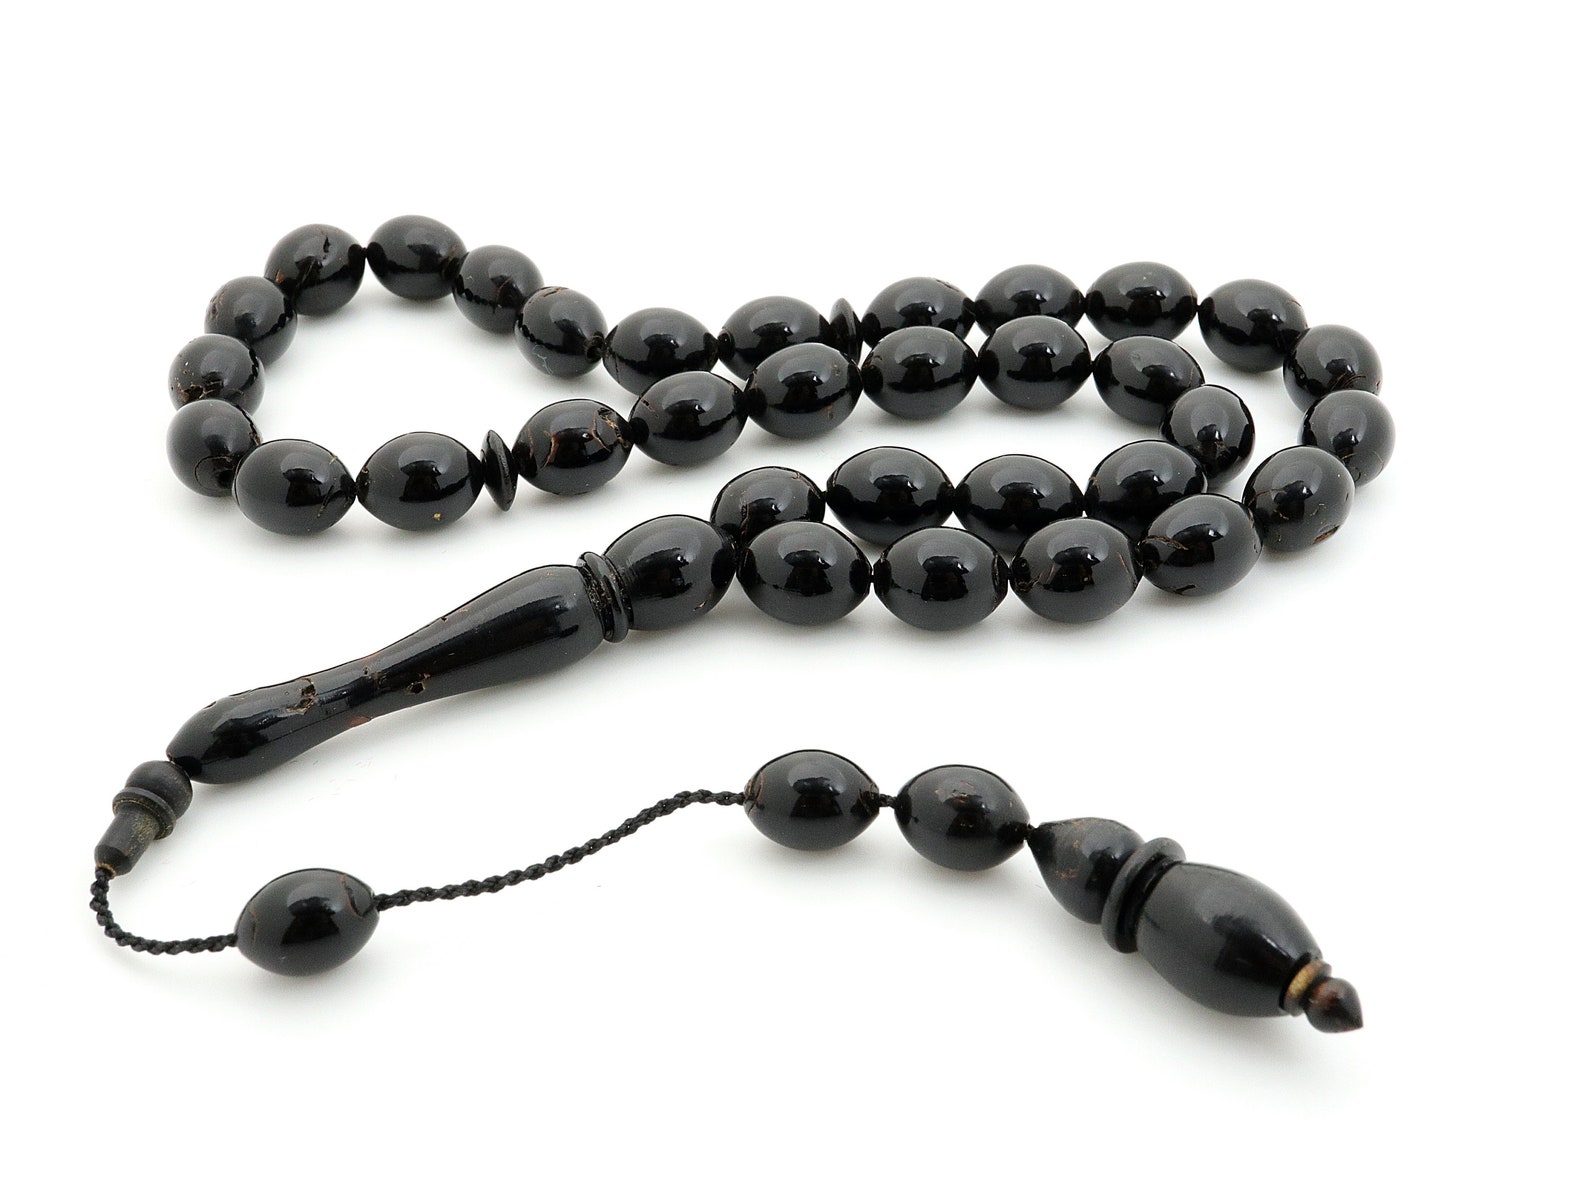 Yusur Yusr Black Coral 33 beads Islamic Prayer Beads Misbaha | Etsy